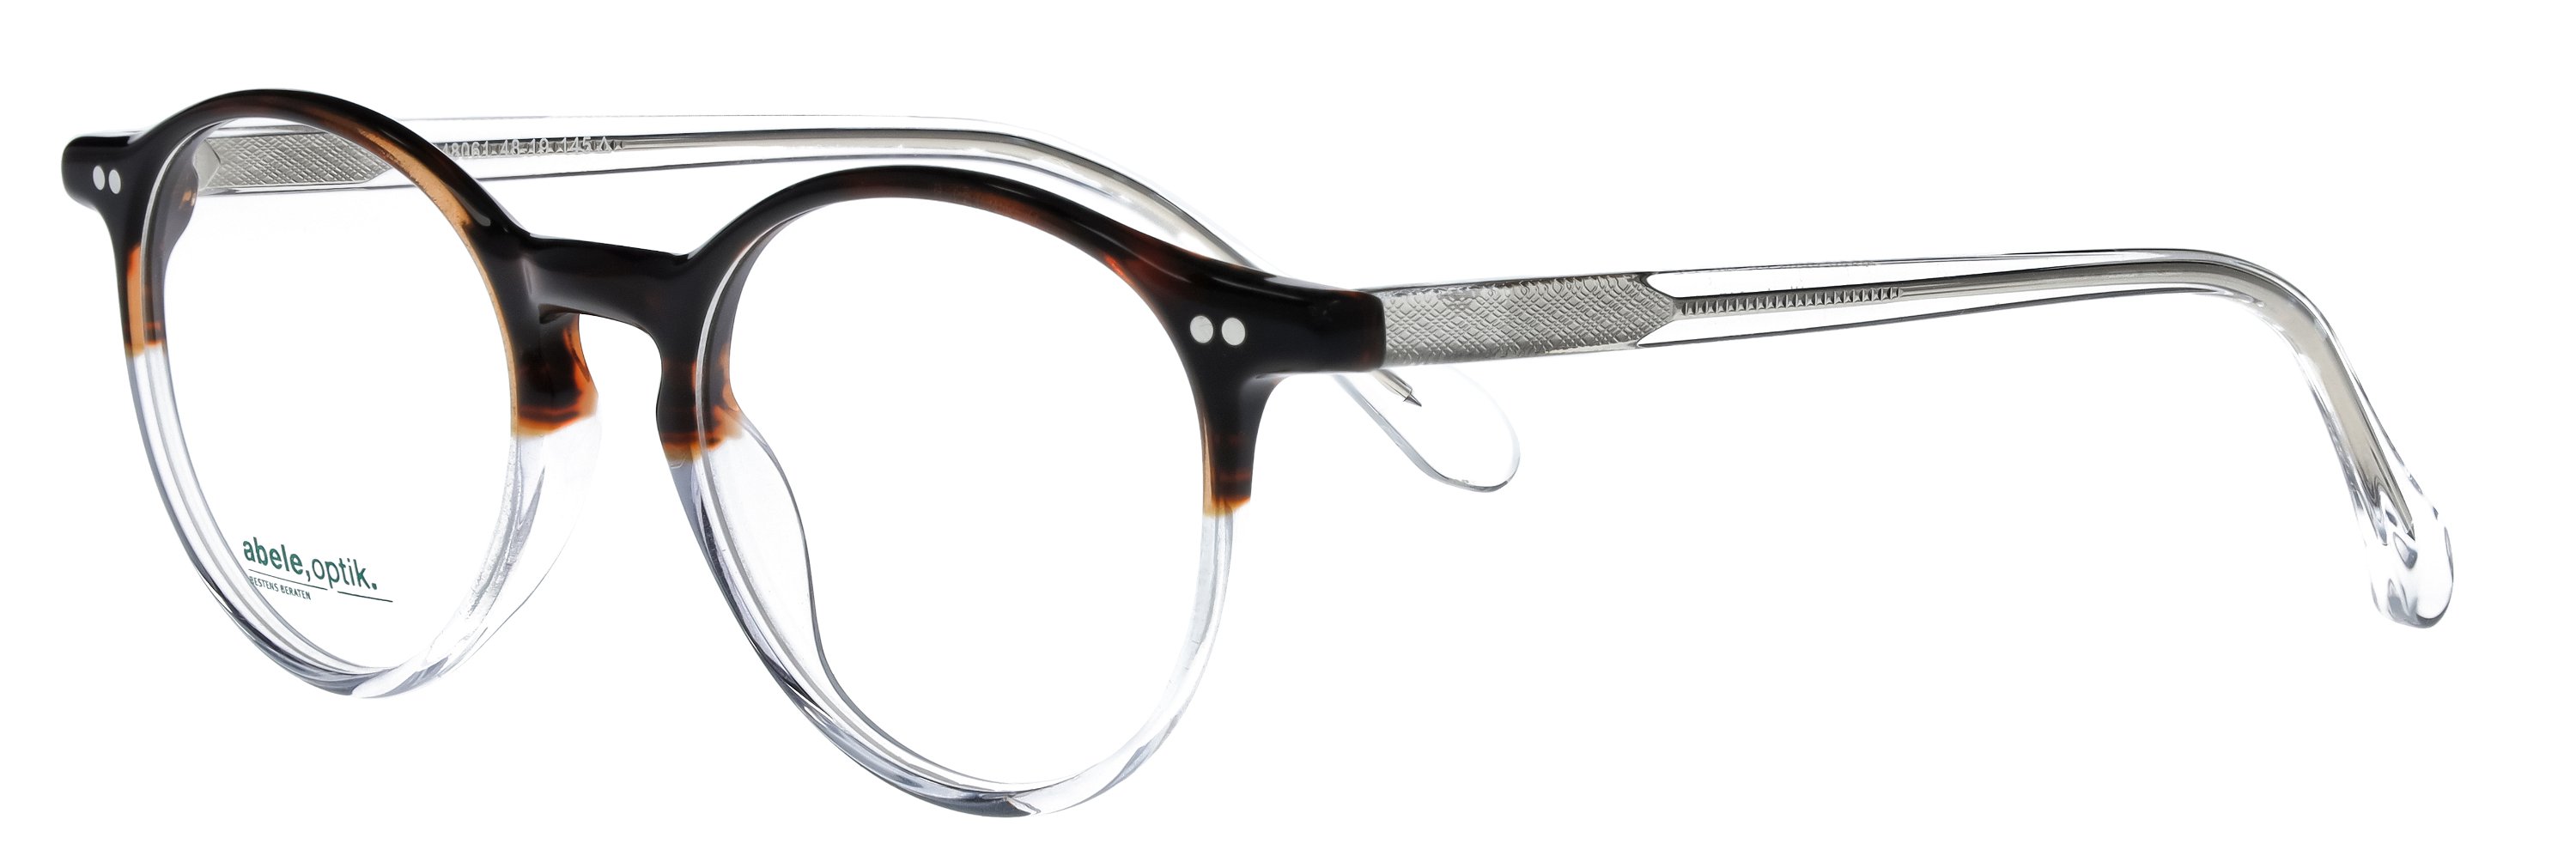 Das Bild zeigt die Korrektionsbrille 148061 von der Marke Abele Optik in braun-weiß transparent.